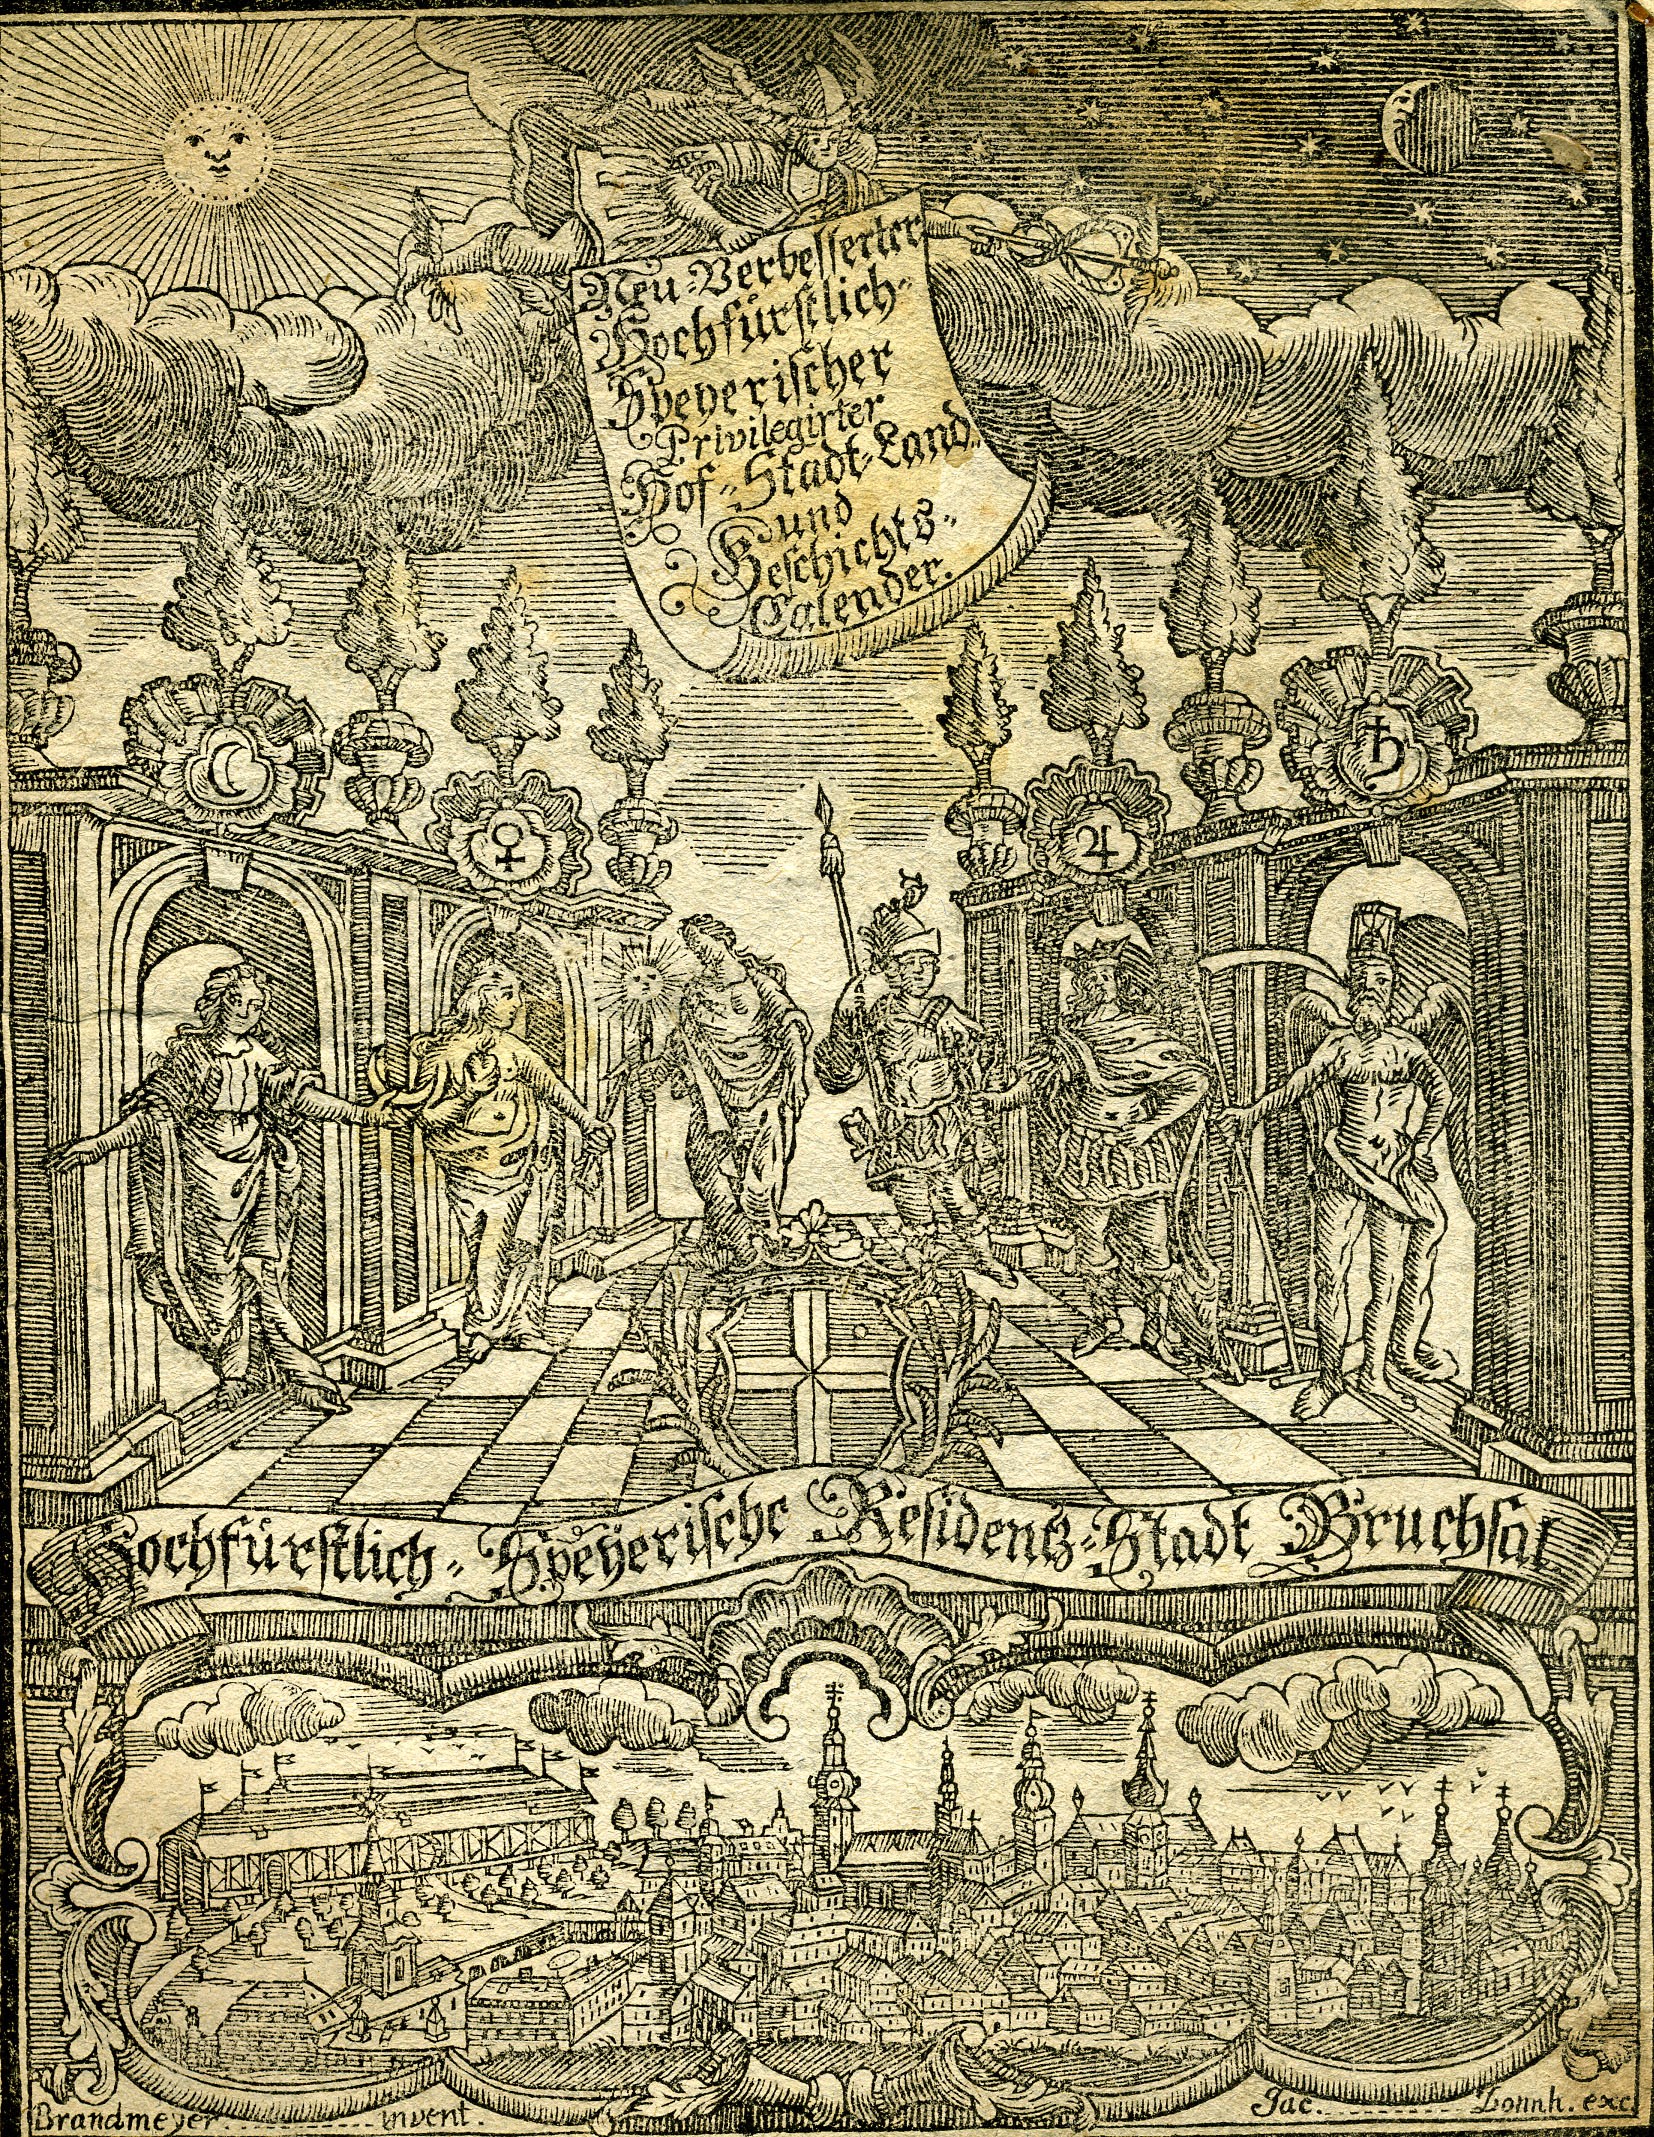 Hochfürstlicher Speyerischer Hof-, Stadt-, Land und Geschichtskalender für das Jahr 1774 (Historisches Museum der Pfalz, Speyer CC BY)